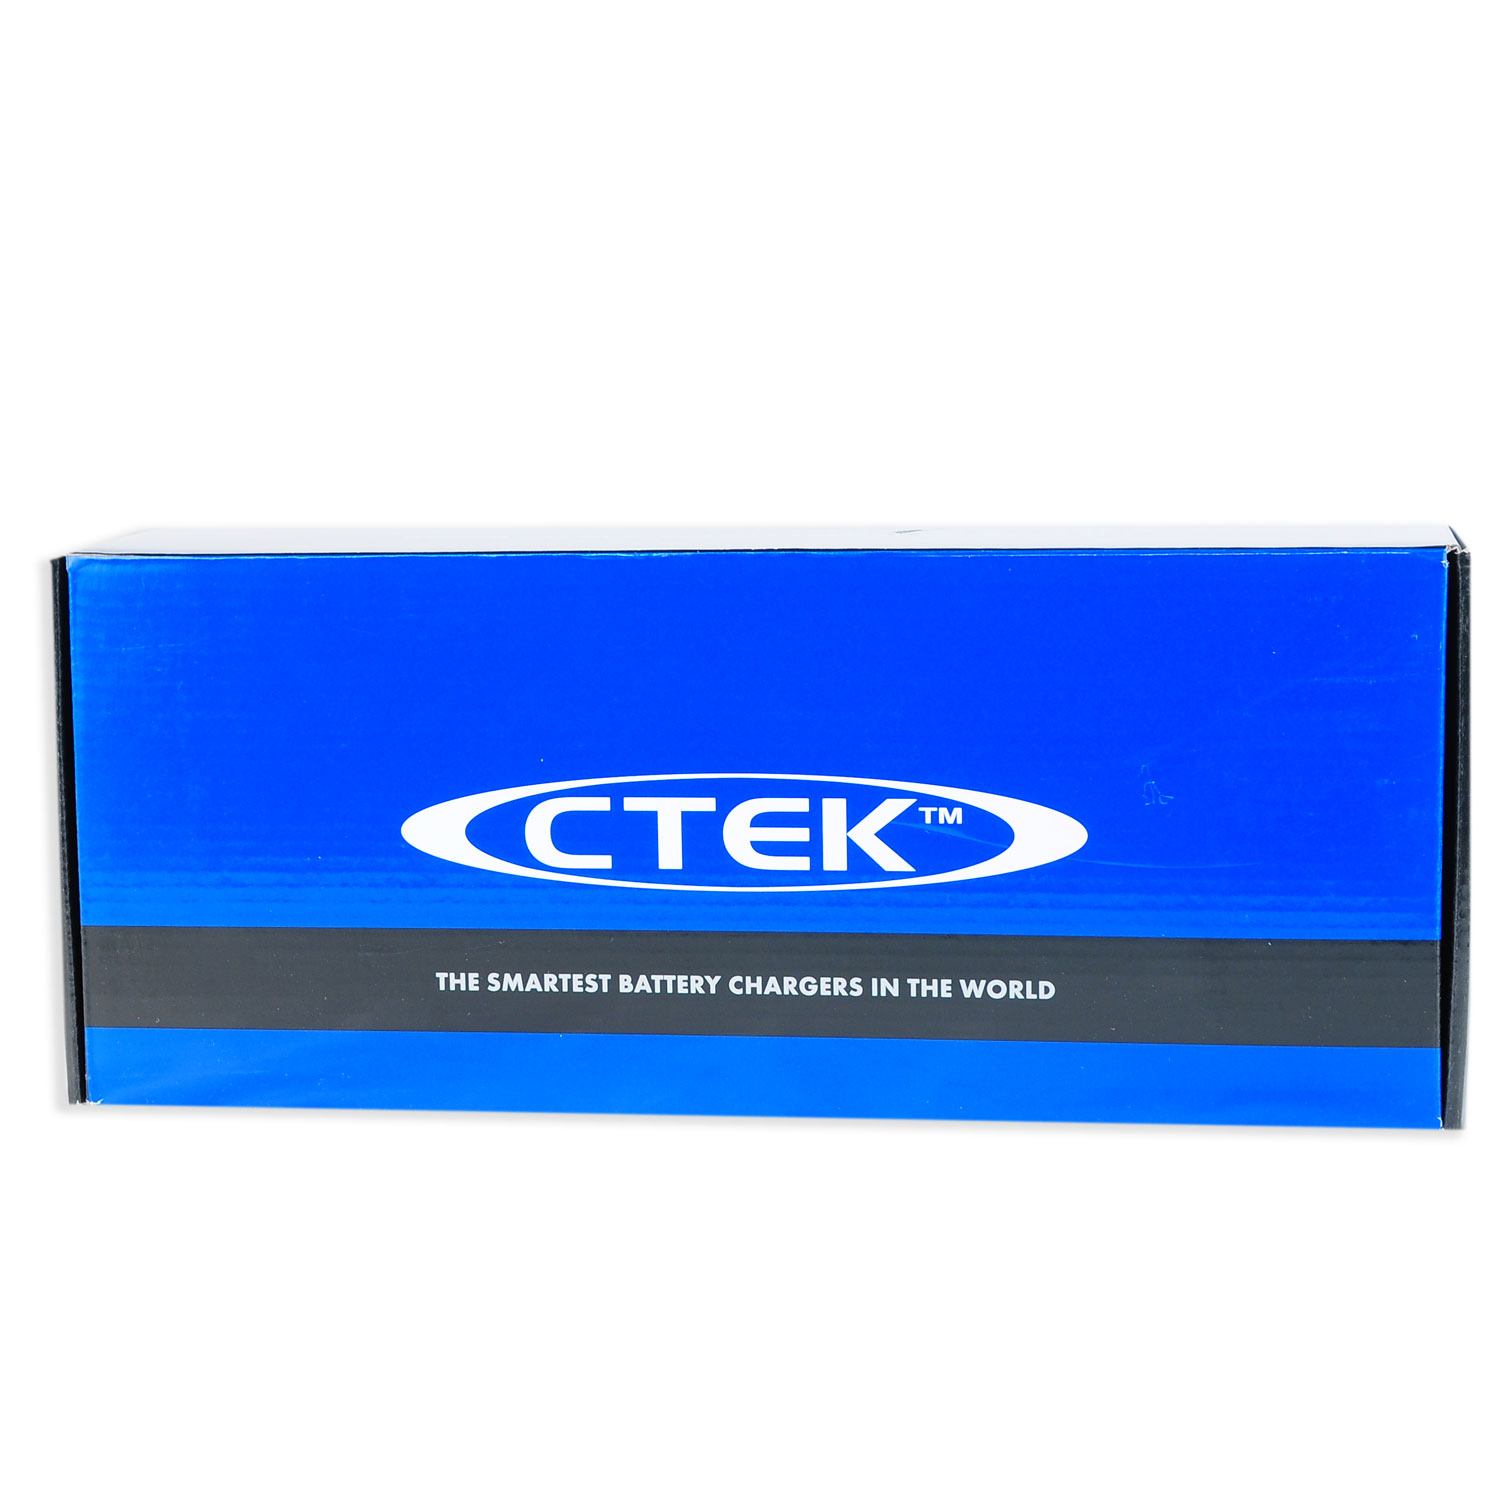 Ctek Wandhalterung 300 (56314) für MXS 25, MXS 25000, MXT 14